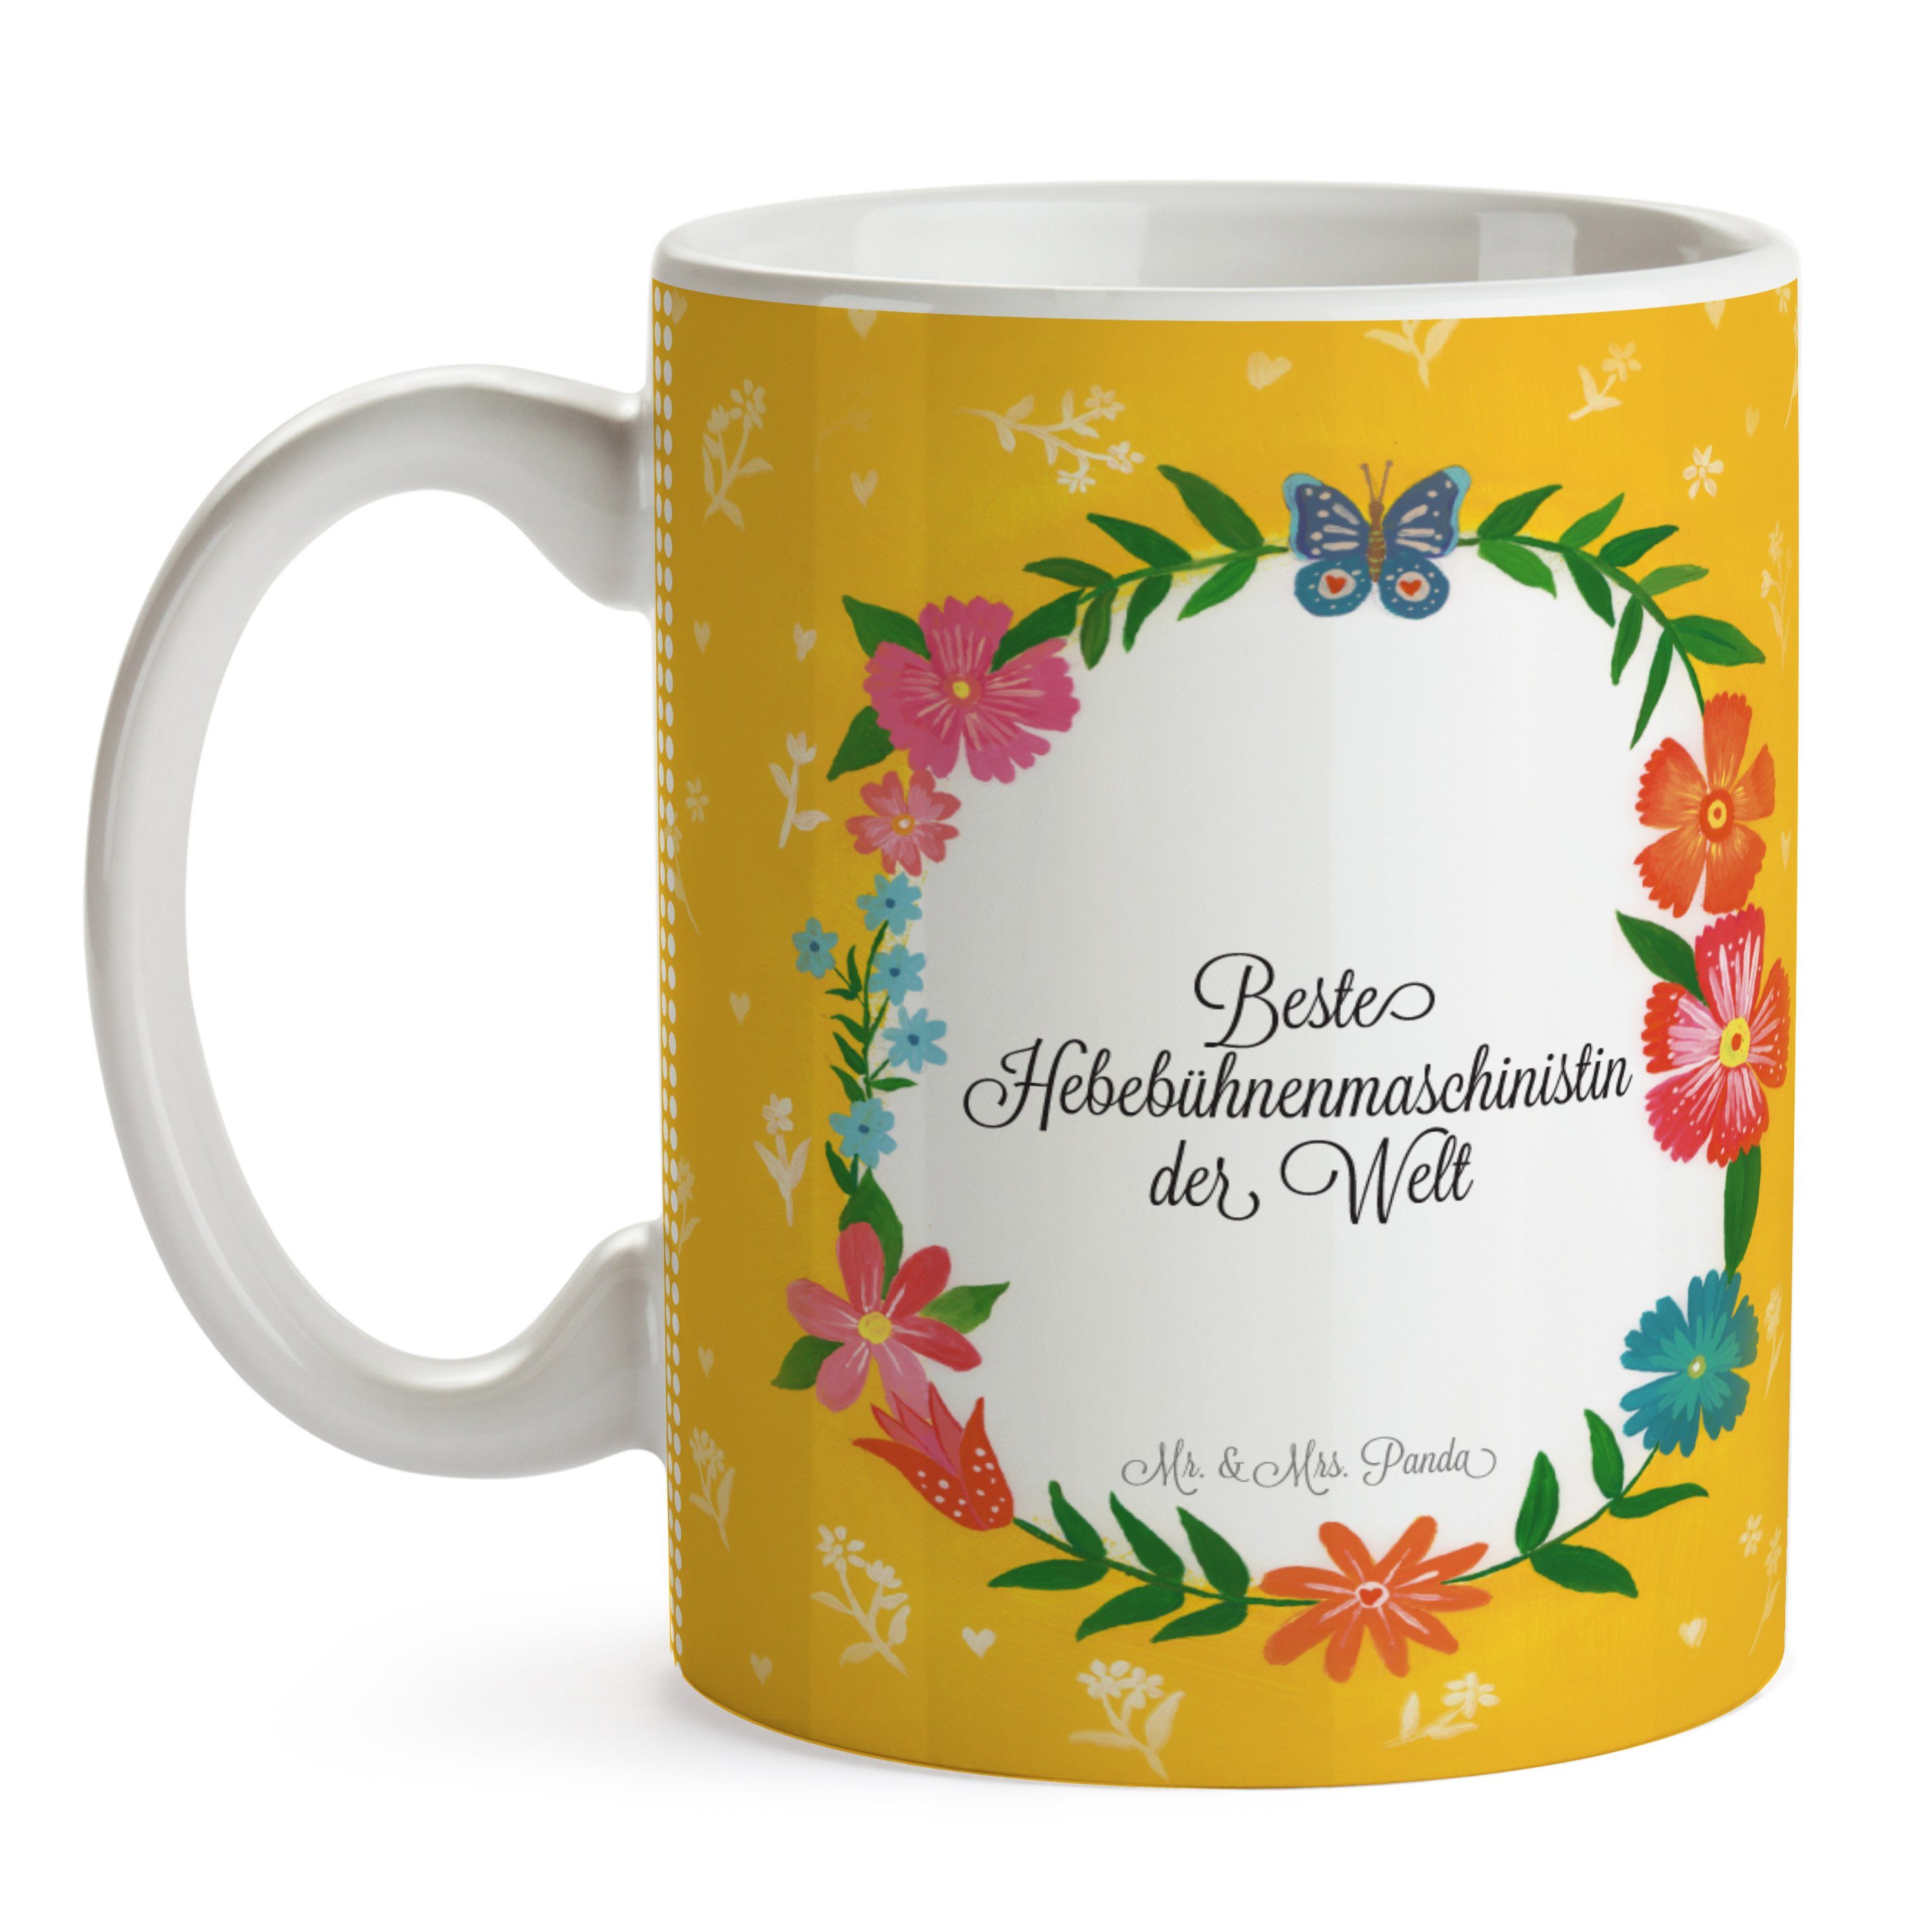 Mr. & Mrs. Panda Gratulation, Geschenk, Keramik - Kaffeetasse, Tasse Porzella, Hebebühnenmaschinistin